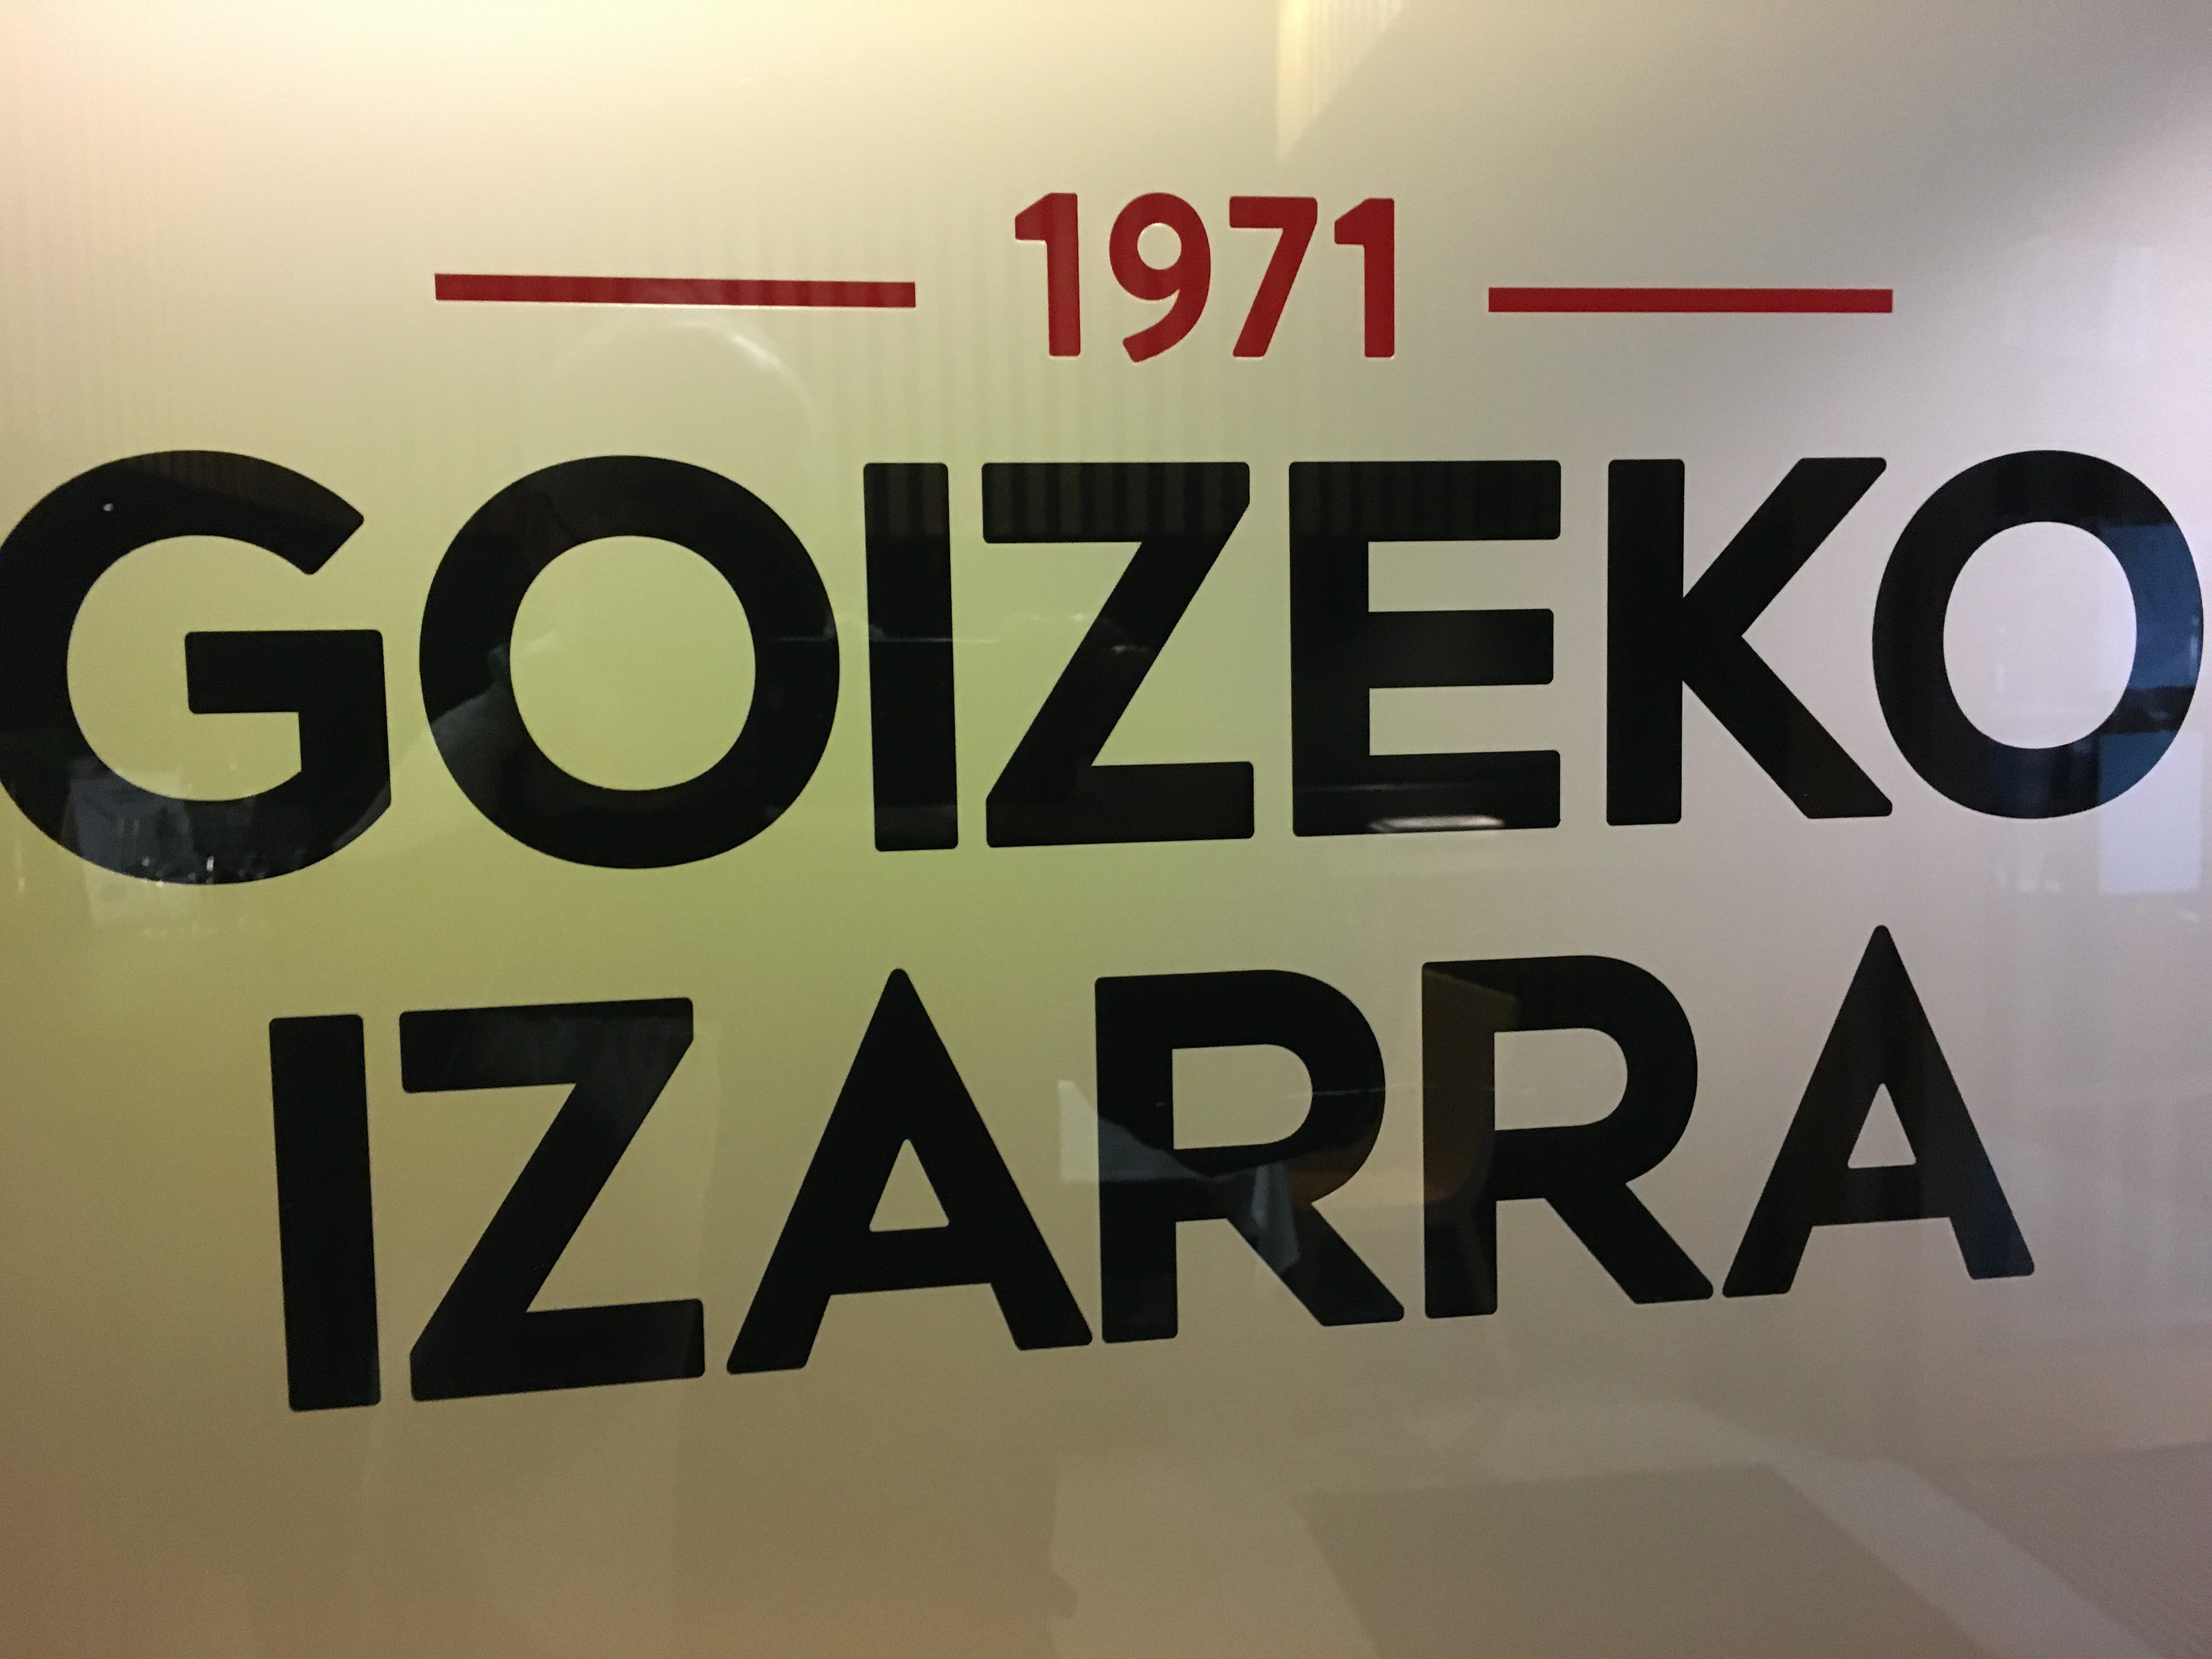 Goizeko Izarra de Bilbao